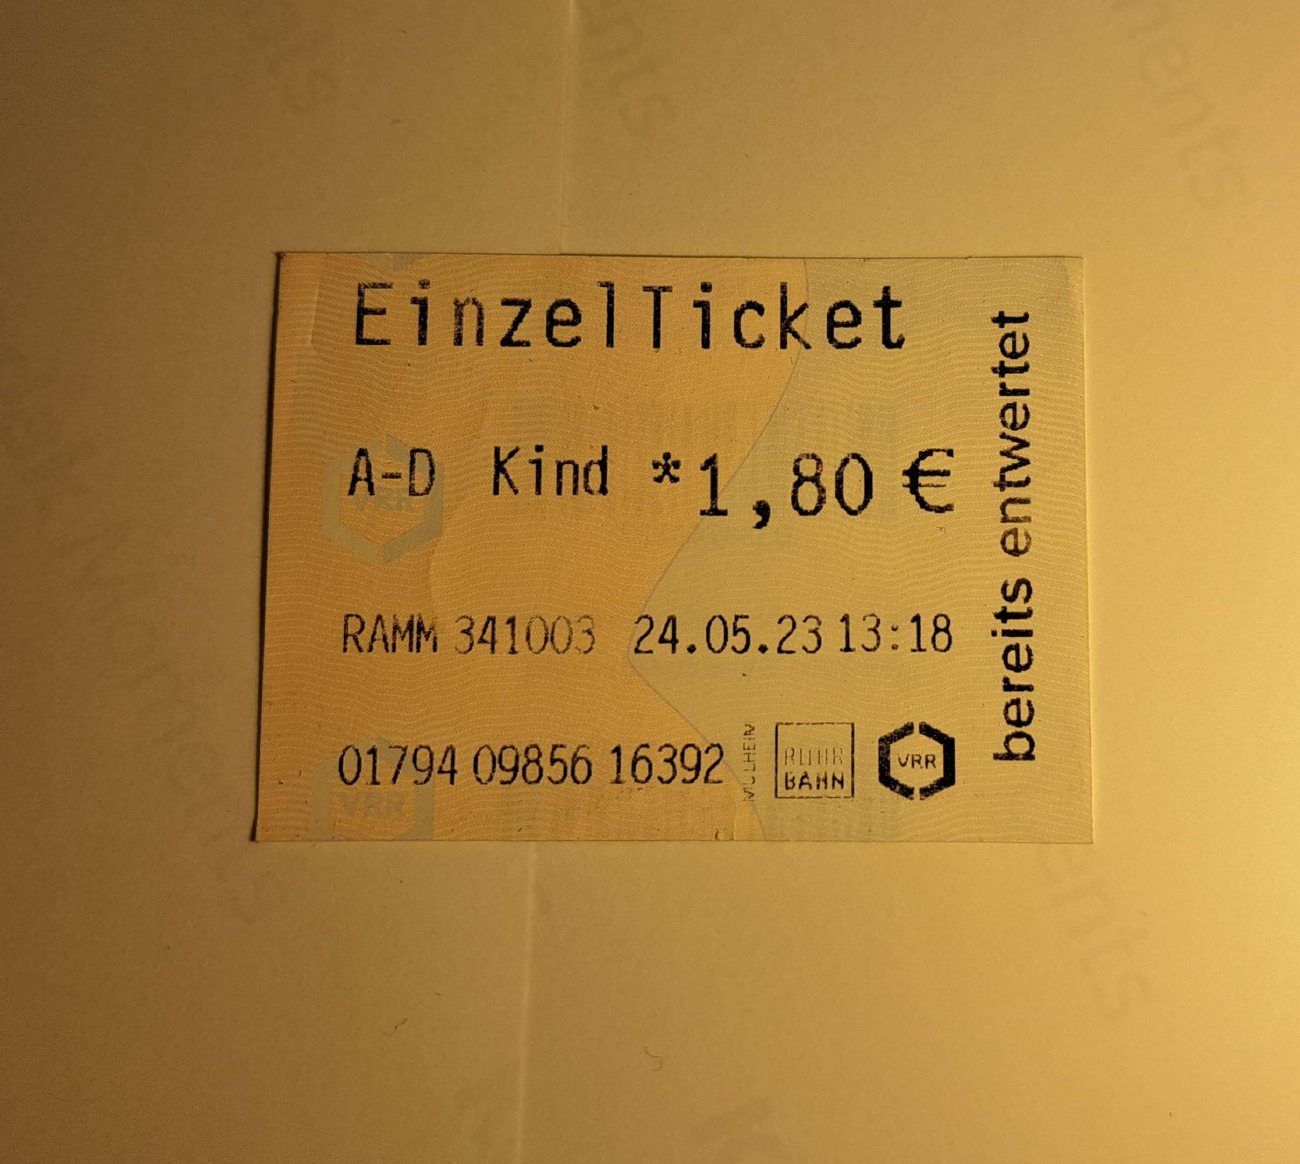 Essen — Tickets; Gelsenkirchen — Tickets; Tickets (all)